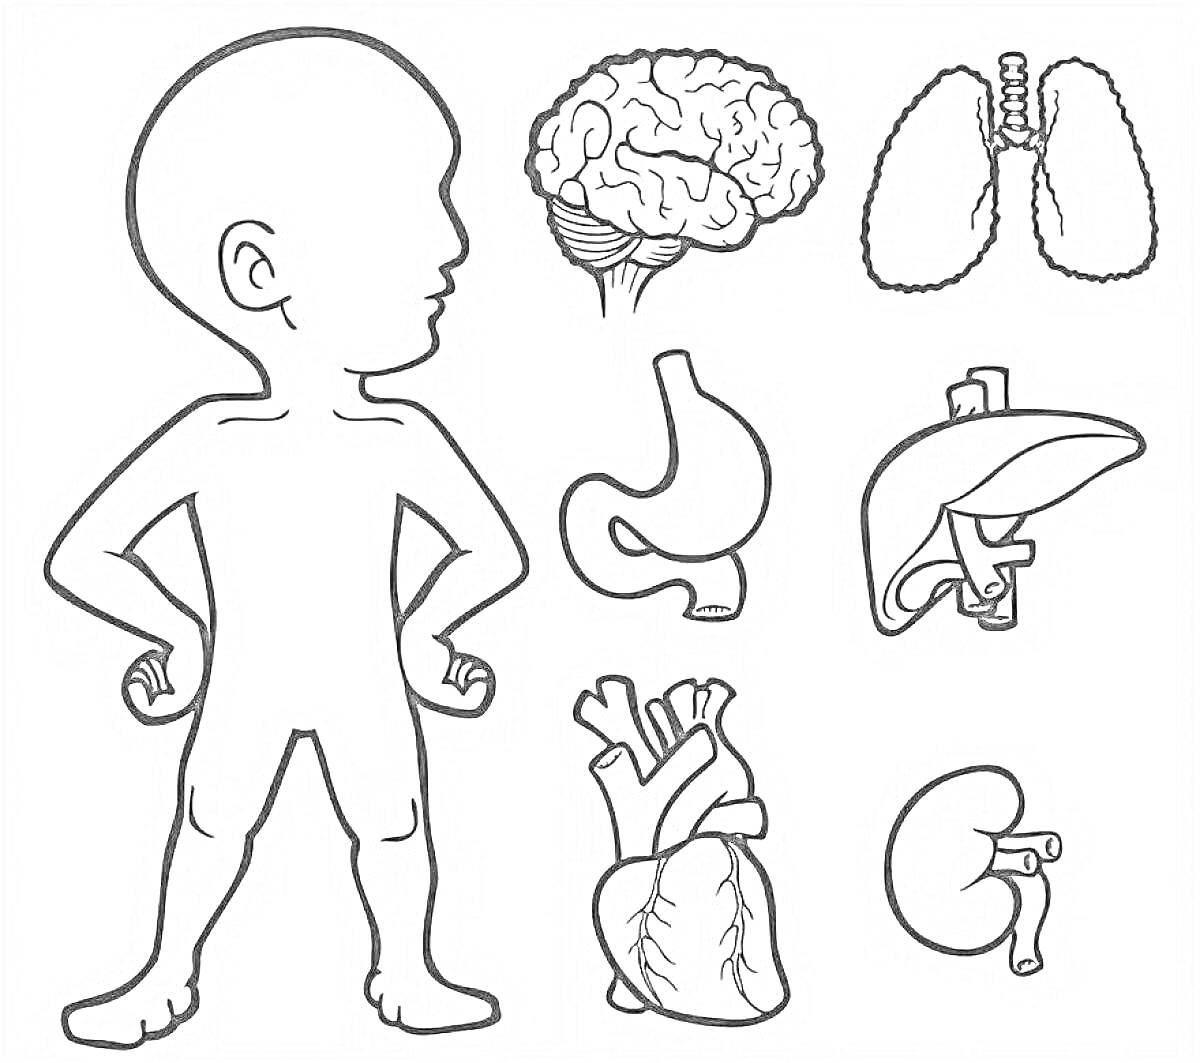 Человеческое тело и основные органы